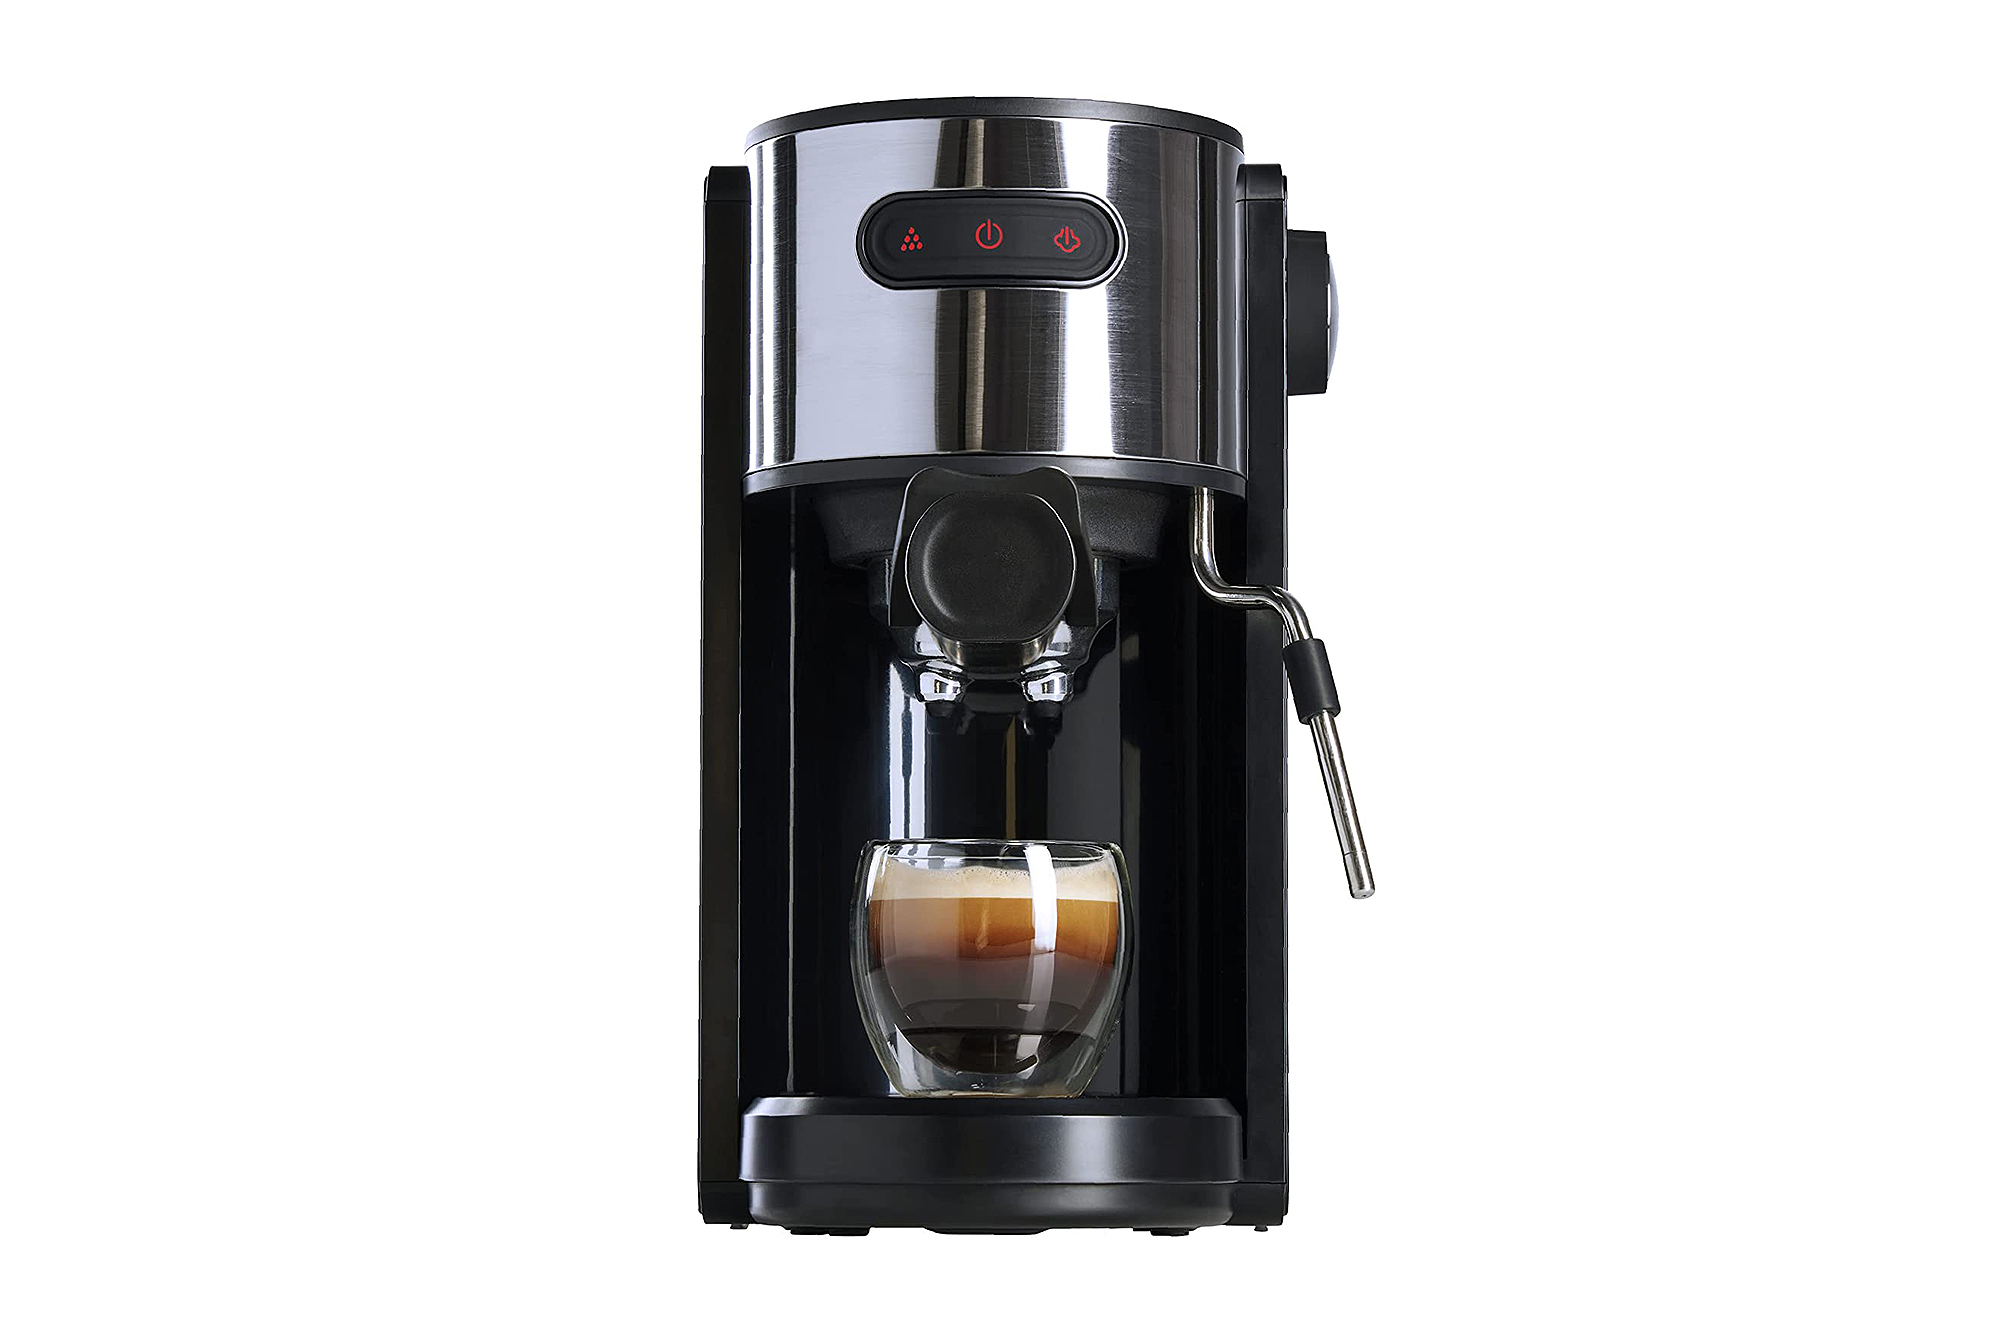 https://www.usmagazine.com/wp-content/uploads/2022/08/Coffee-Gator-Espresso-Machine.jpg?quality=86&strip=all